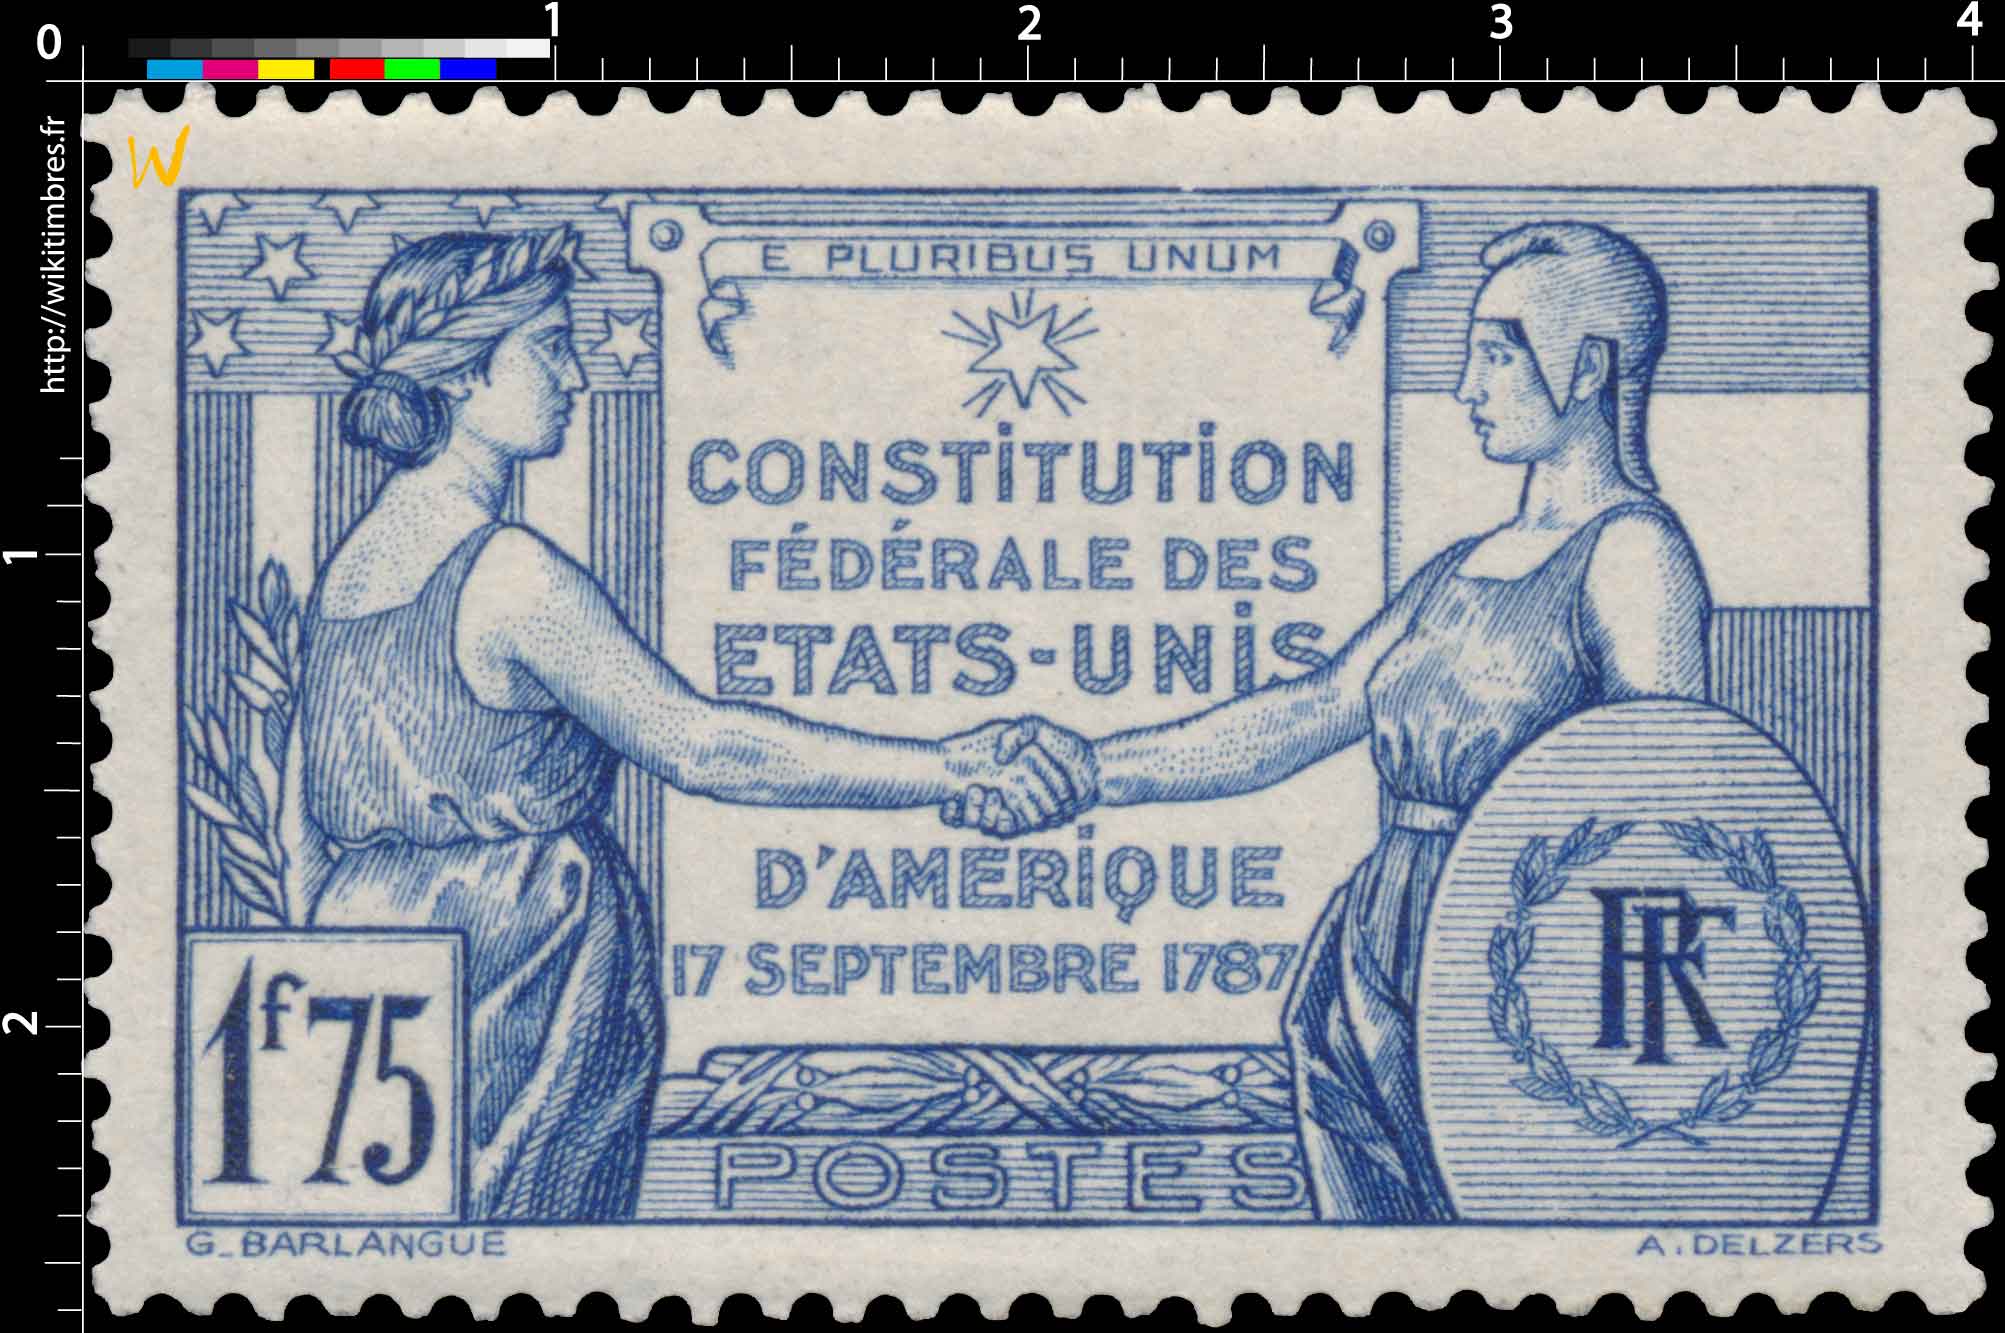 E PLURIBUS UNUM CONSTITUTION FÉDÉRALE DES ÉTATS-UNIS D'AMÉRIQUE 17 SEPTEMBRE 1787